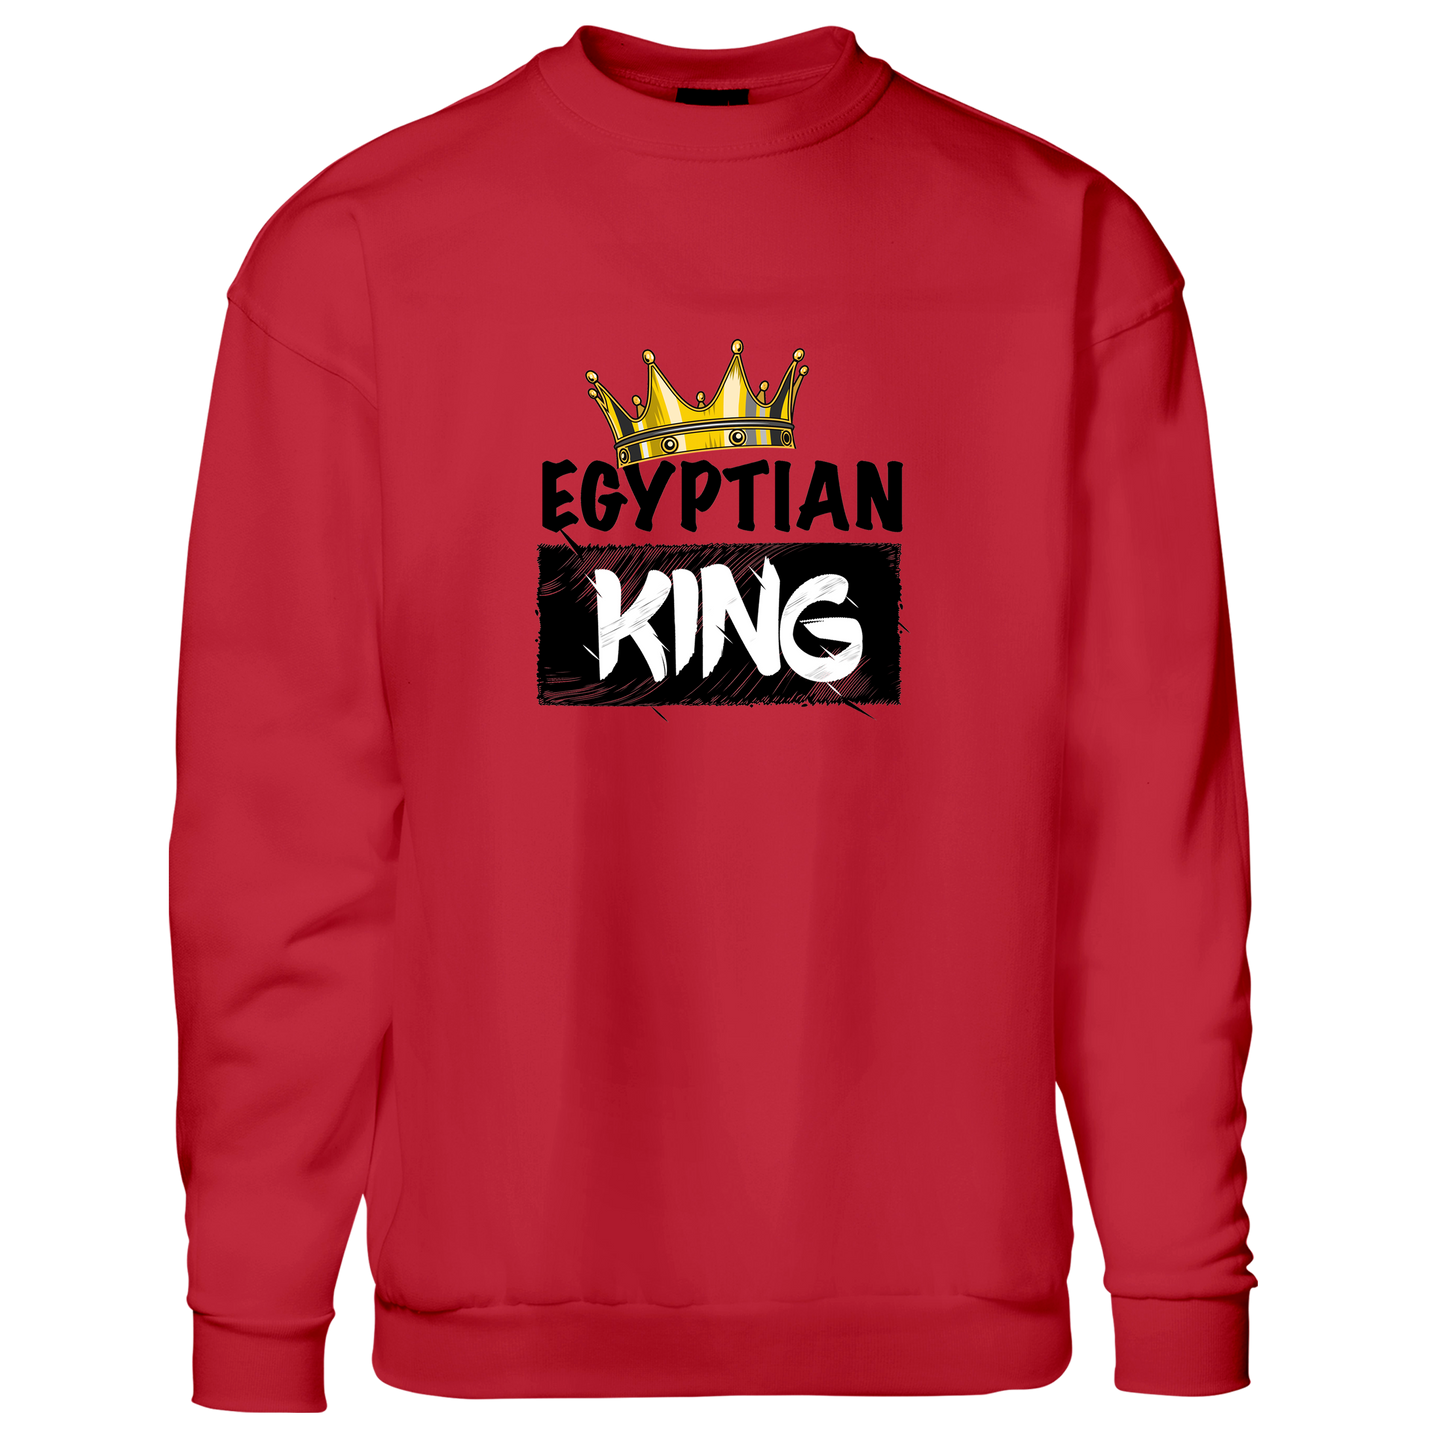 Egyptian king - Sweatshirt